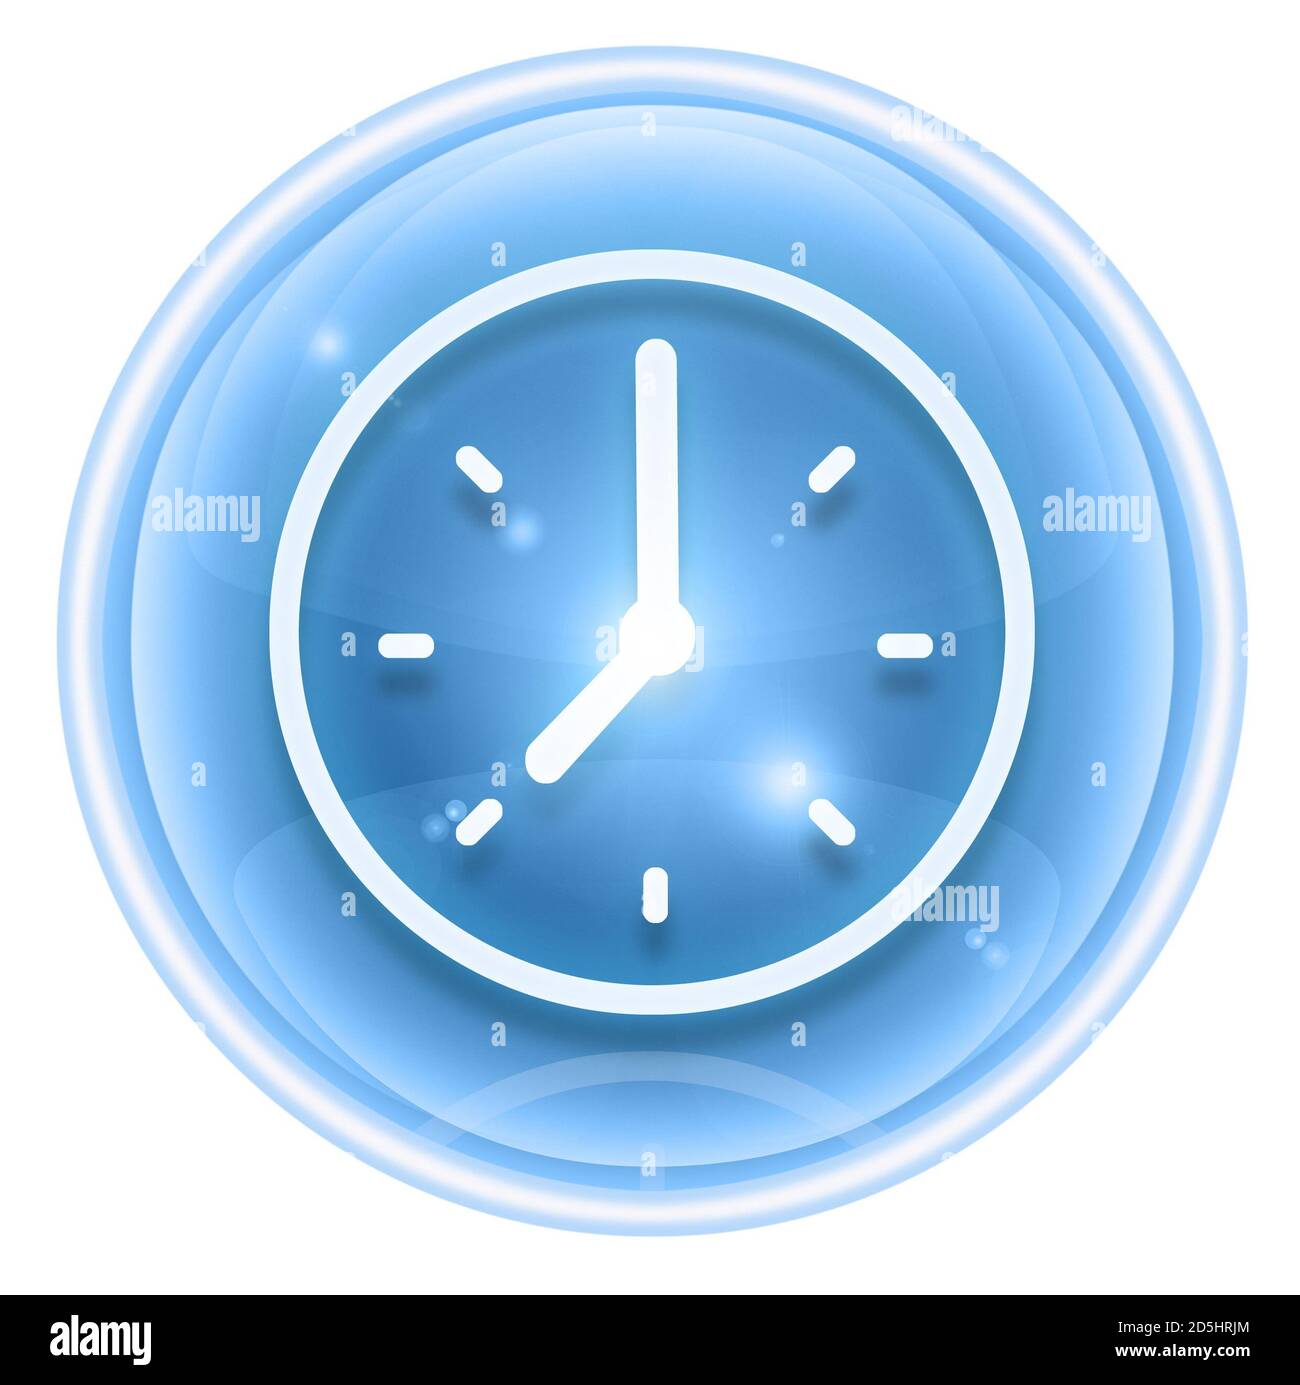 clock icon ice, isolated on white background. Stock Photo